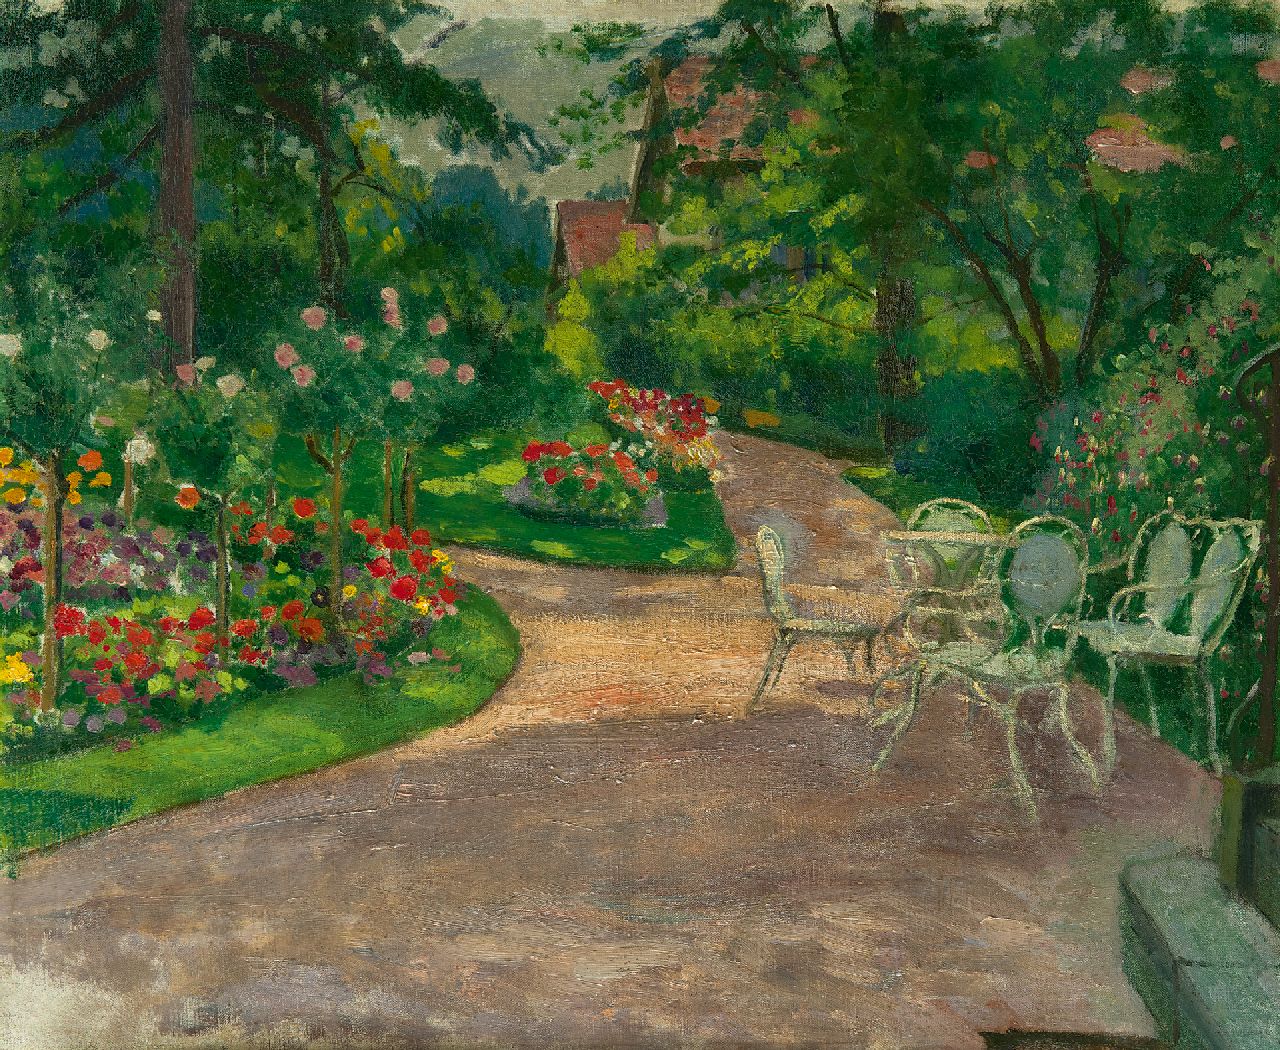 Sachsen M.M.A. von | Mathilde Marie Auguste von Sachsen, A summer day in the garden, oil on canvas 46.3 x 56.2 cm